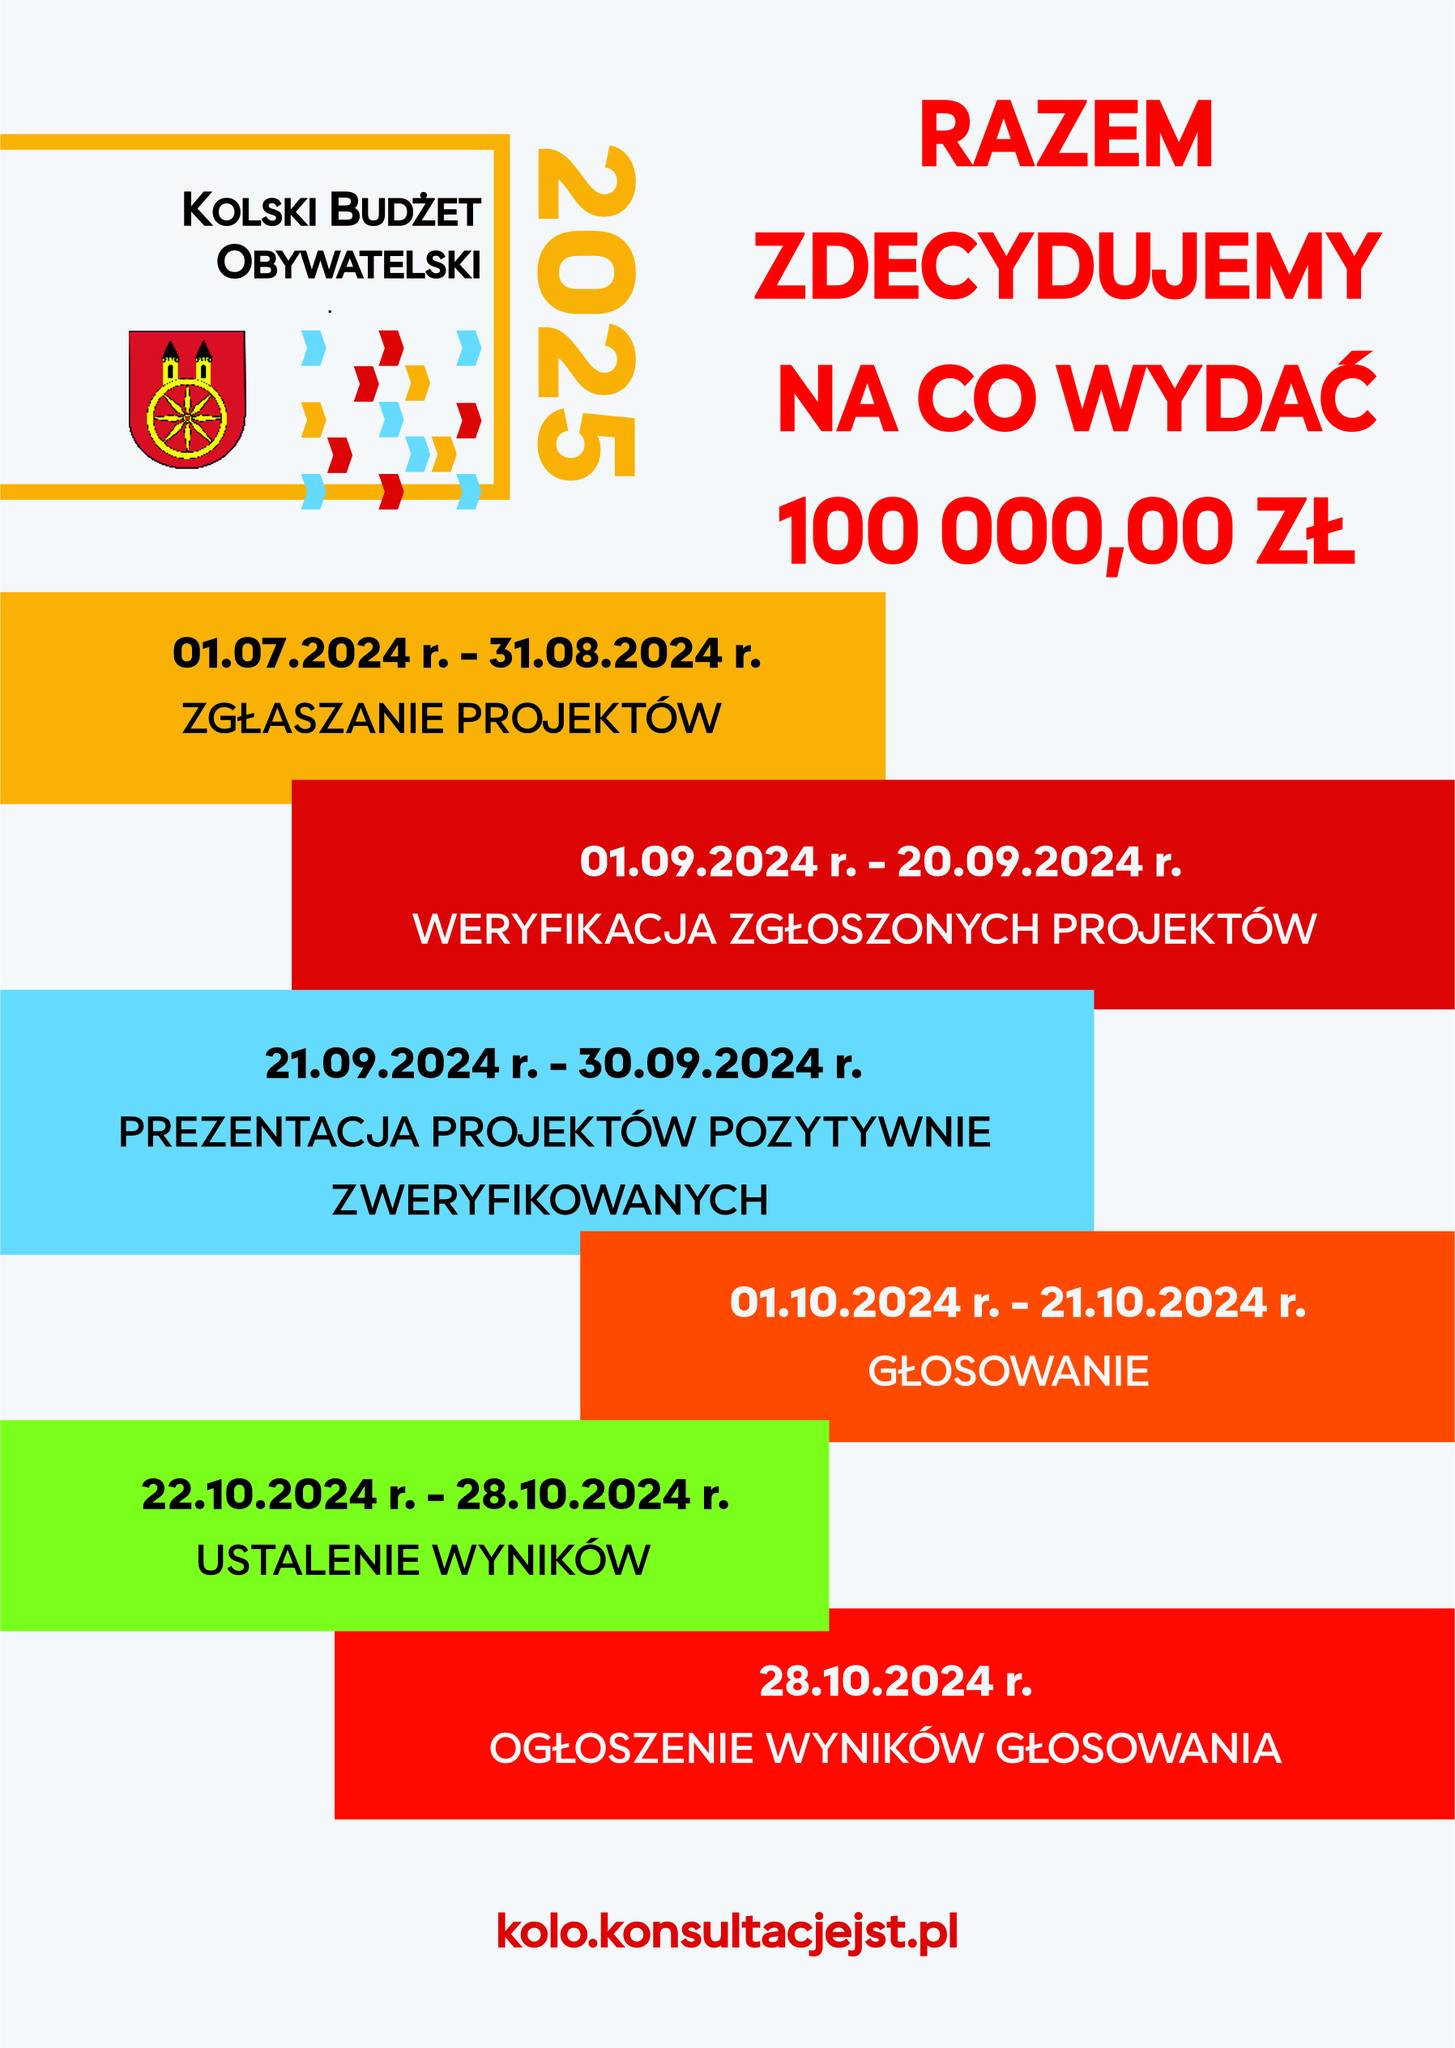 Zdjęcie przedstawia harmonogram Budżetu Obywatelskiego dla miasta Koło na rok 2025. Całkowita kwota przeznaczona na projekty wynosi 100,000 zł. Adres strony internetowej związanej z budżetem to kolo.konsultacjejest.pl